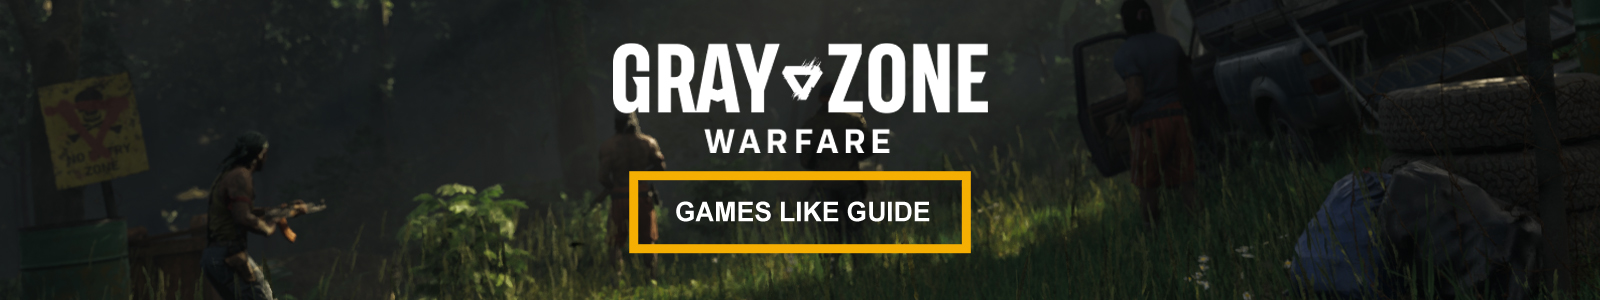 Guida a giochi simili a Gray Zone Warfare